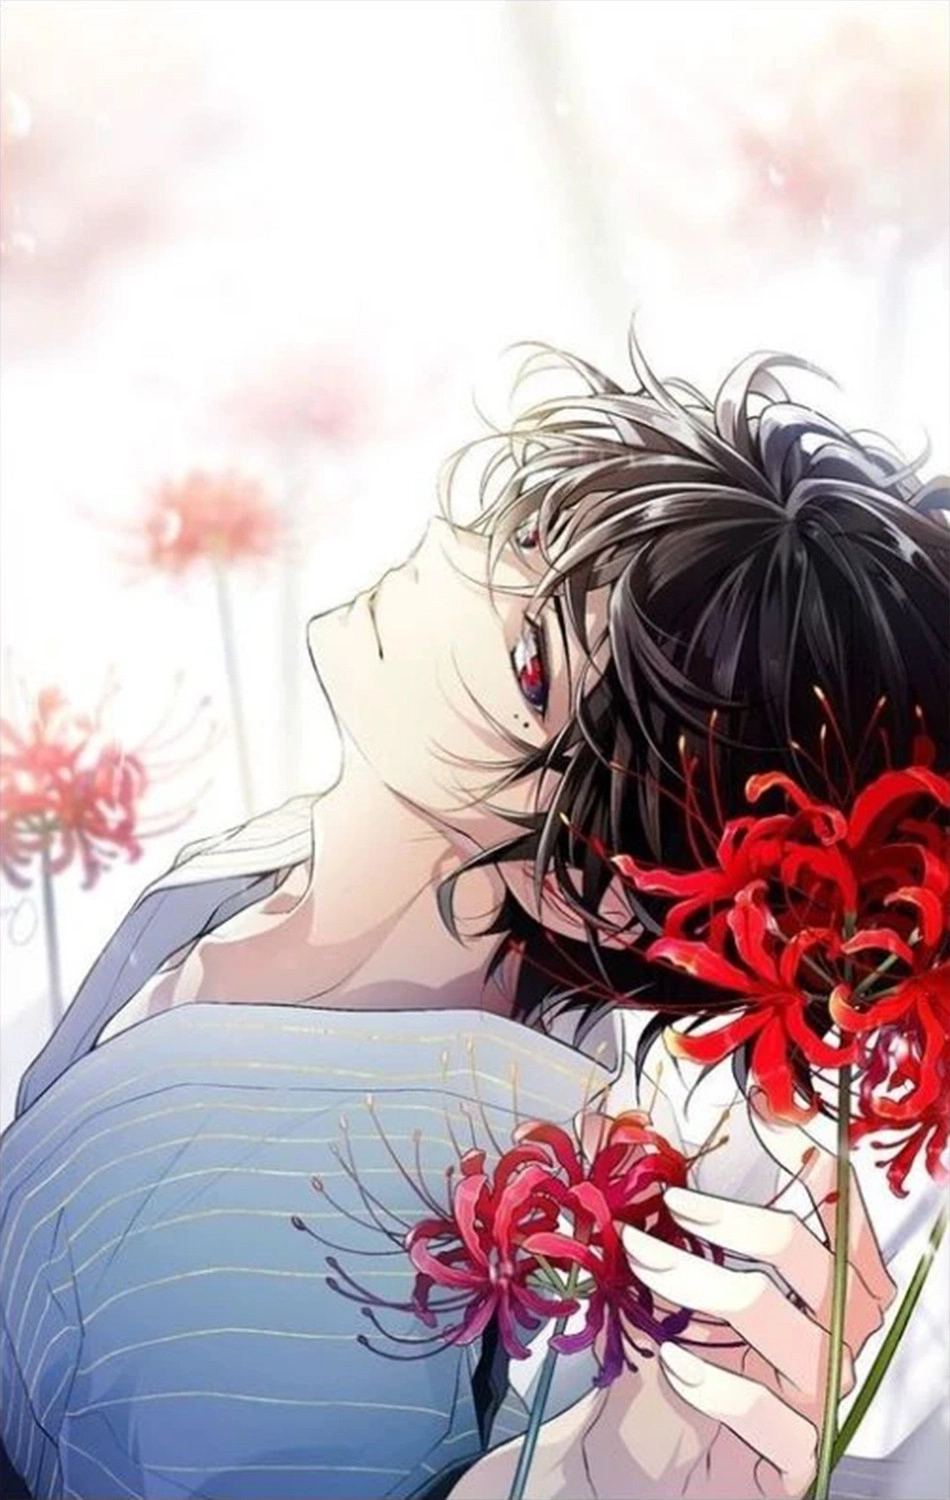  Ảnh nền hoa bỉ ngạn đỏ cùng nhân vật nam anime